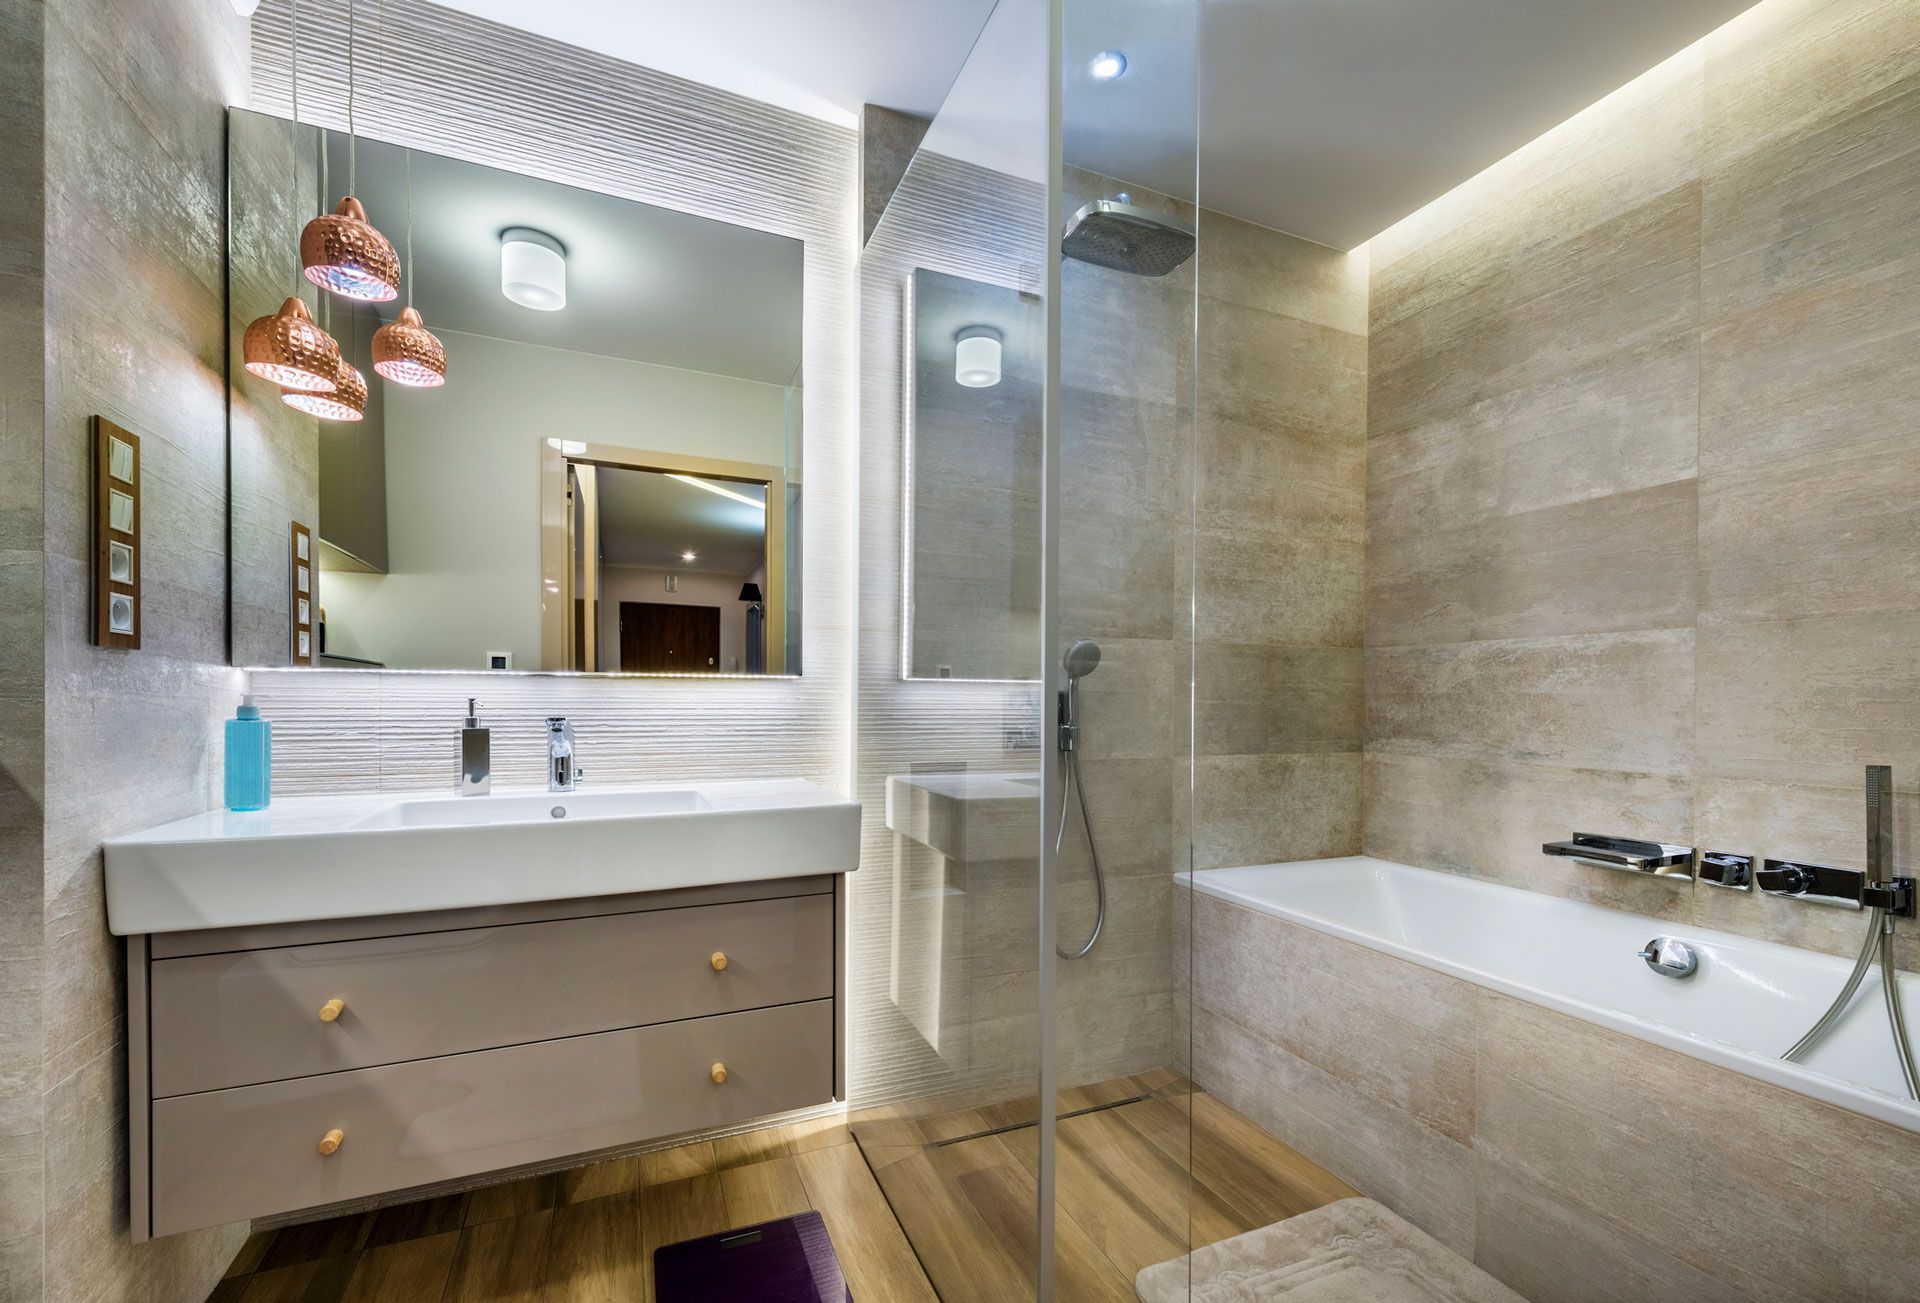 A bathroom with a bathtub , sink , mirror and walk in shower .